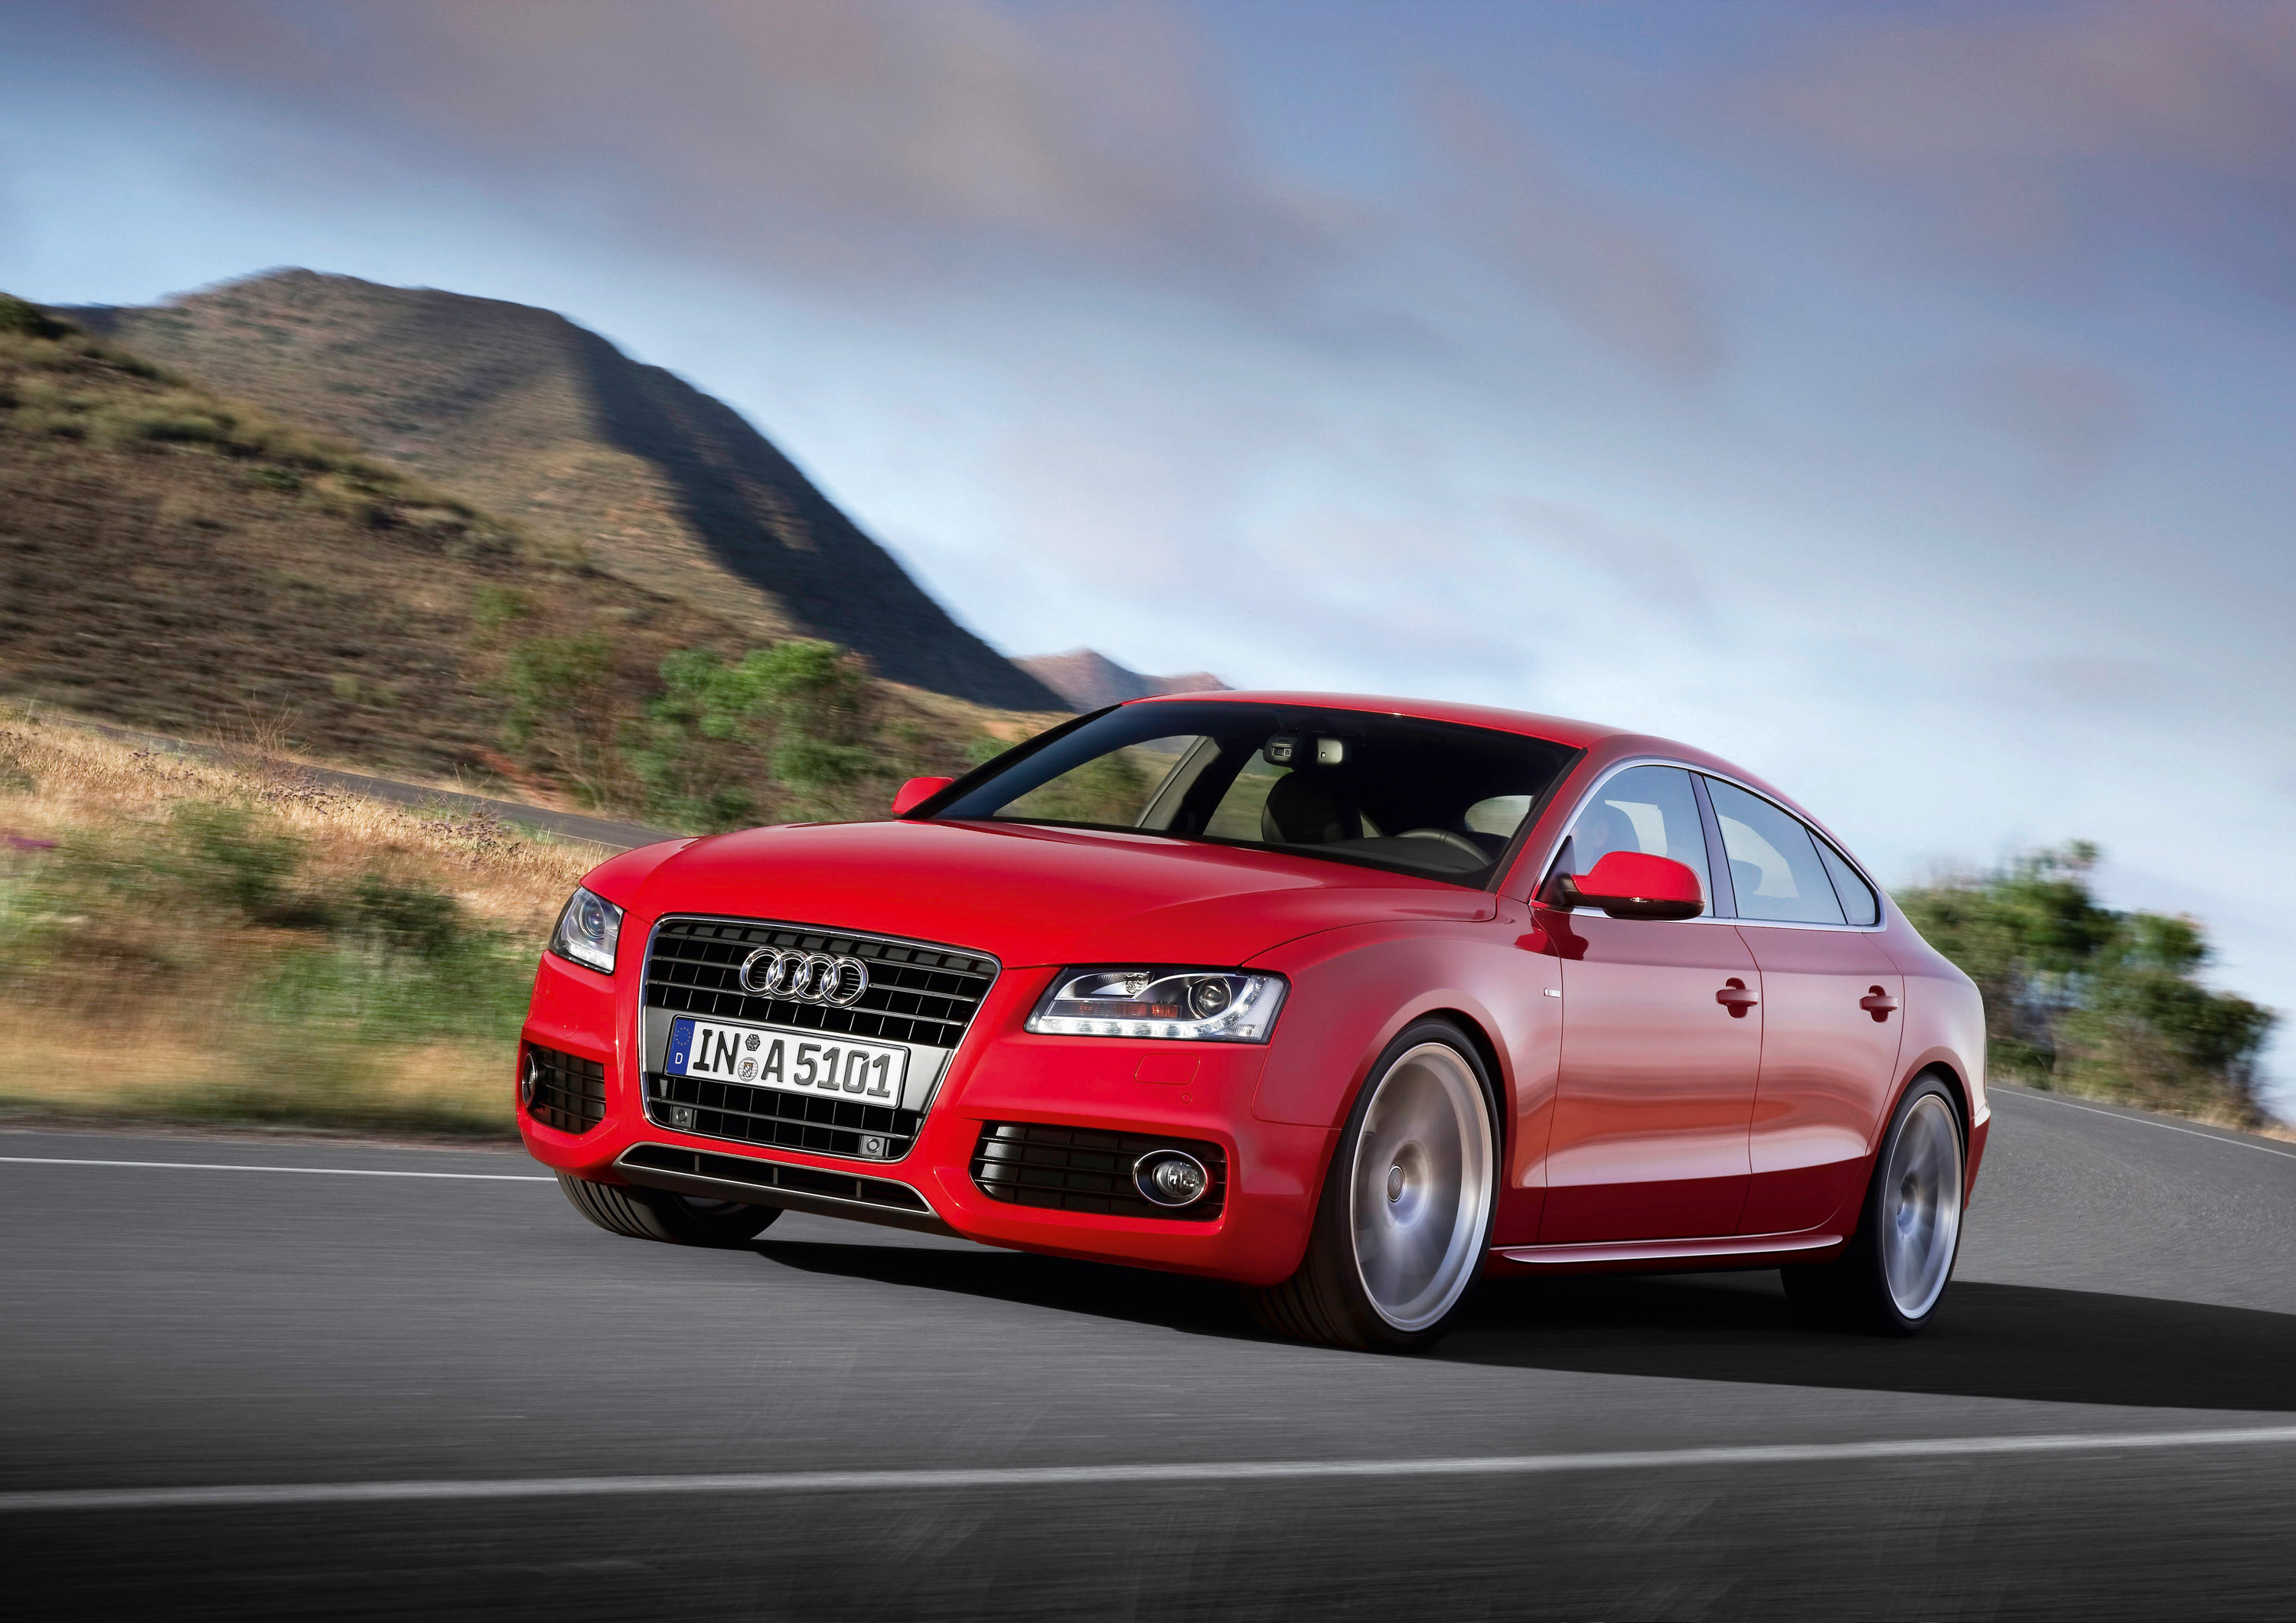 Audi A5, Elegant sportback, HD picture, Automotive excellence, 3000x2130 HD Desktop